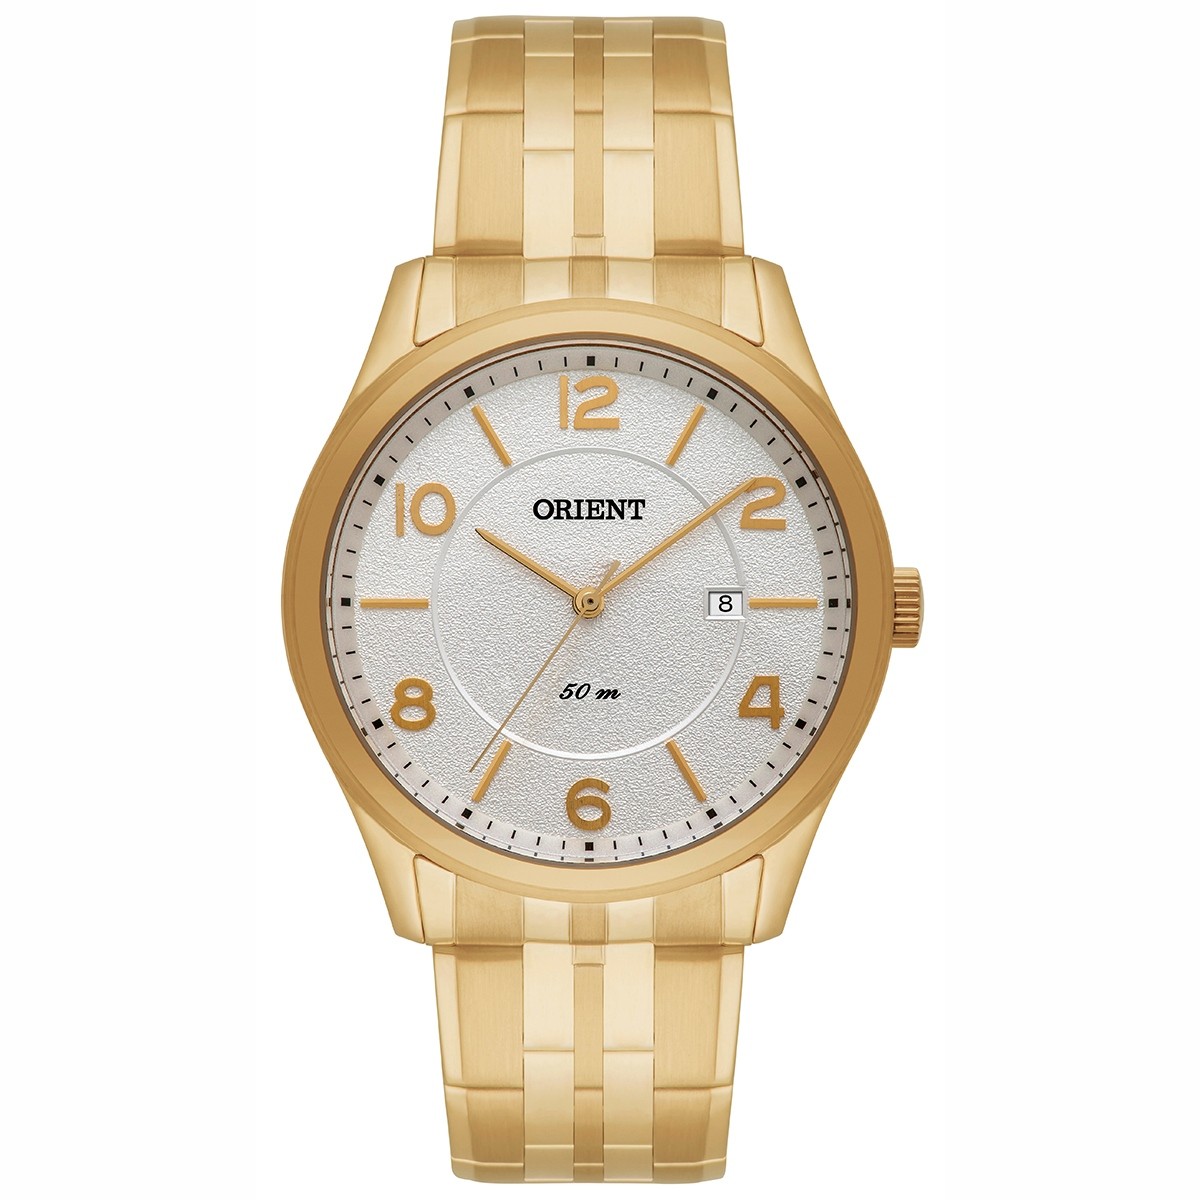 Relógio Orient Masculino Analógico Dourado MGSS1093 B2KX